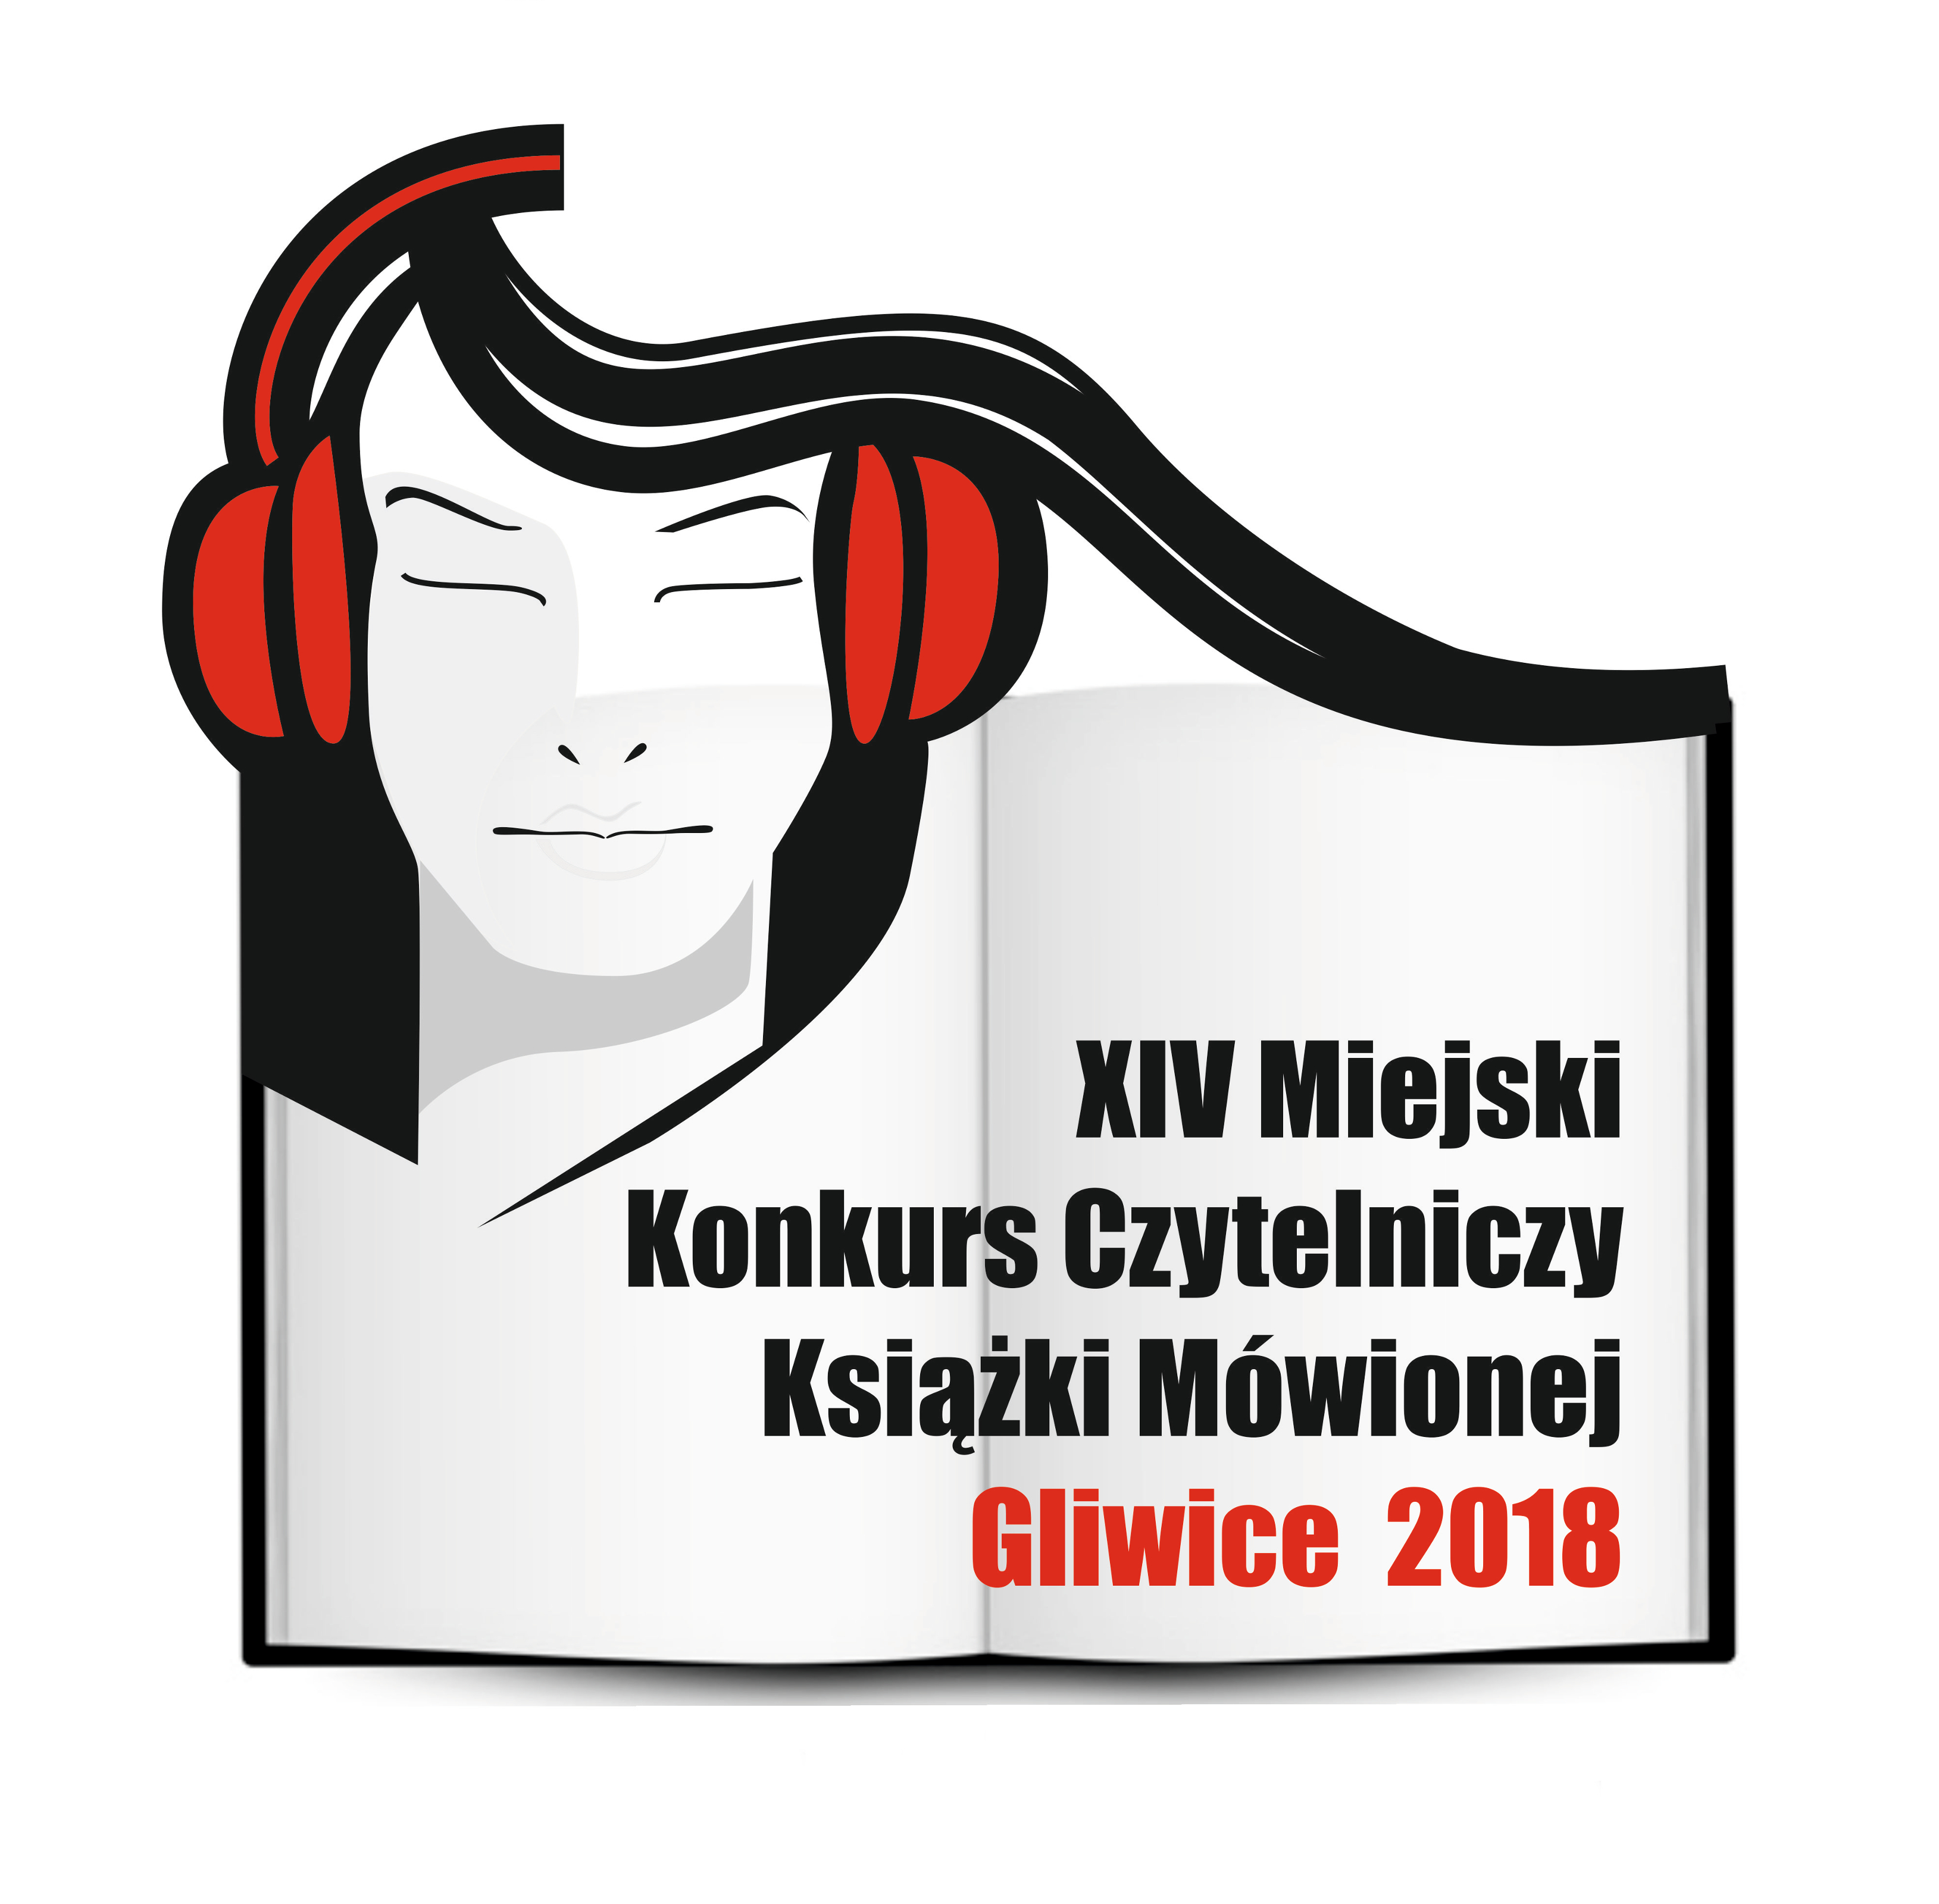 Zgłoszenia do XIV Miejskiego Konkursu Czytelniczego Książki Mówionej Gliwice 2018